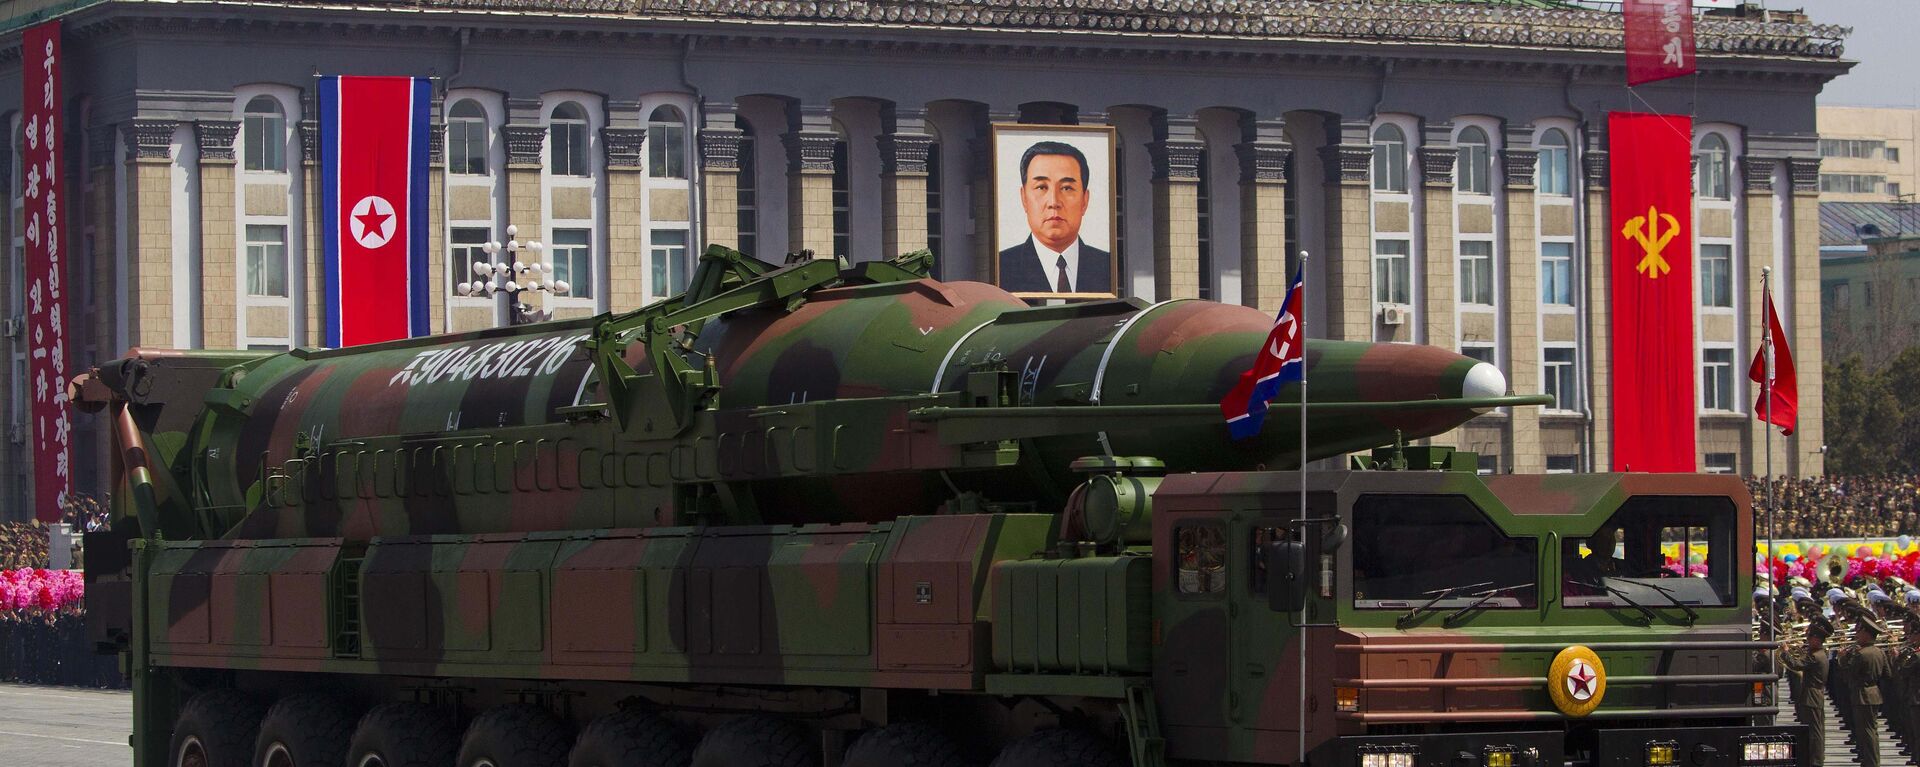 Sistema de misiles intercontinentales de Corea del Norte, mostrados en 2012 - Sputnik Mundo, 1920, 16.03.2021